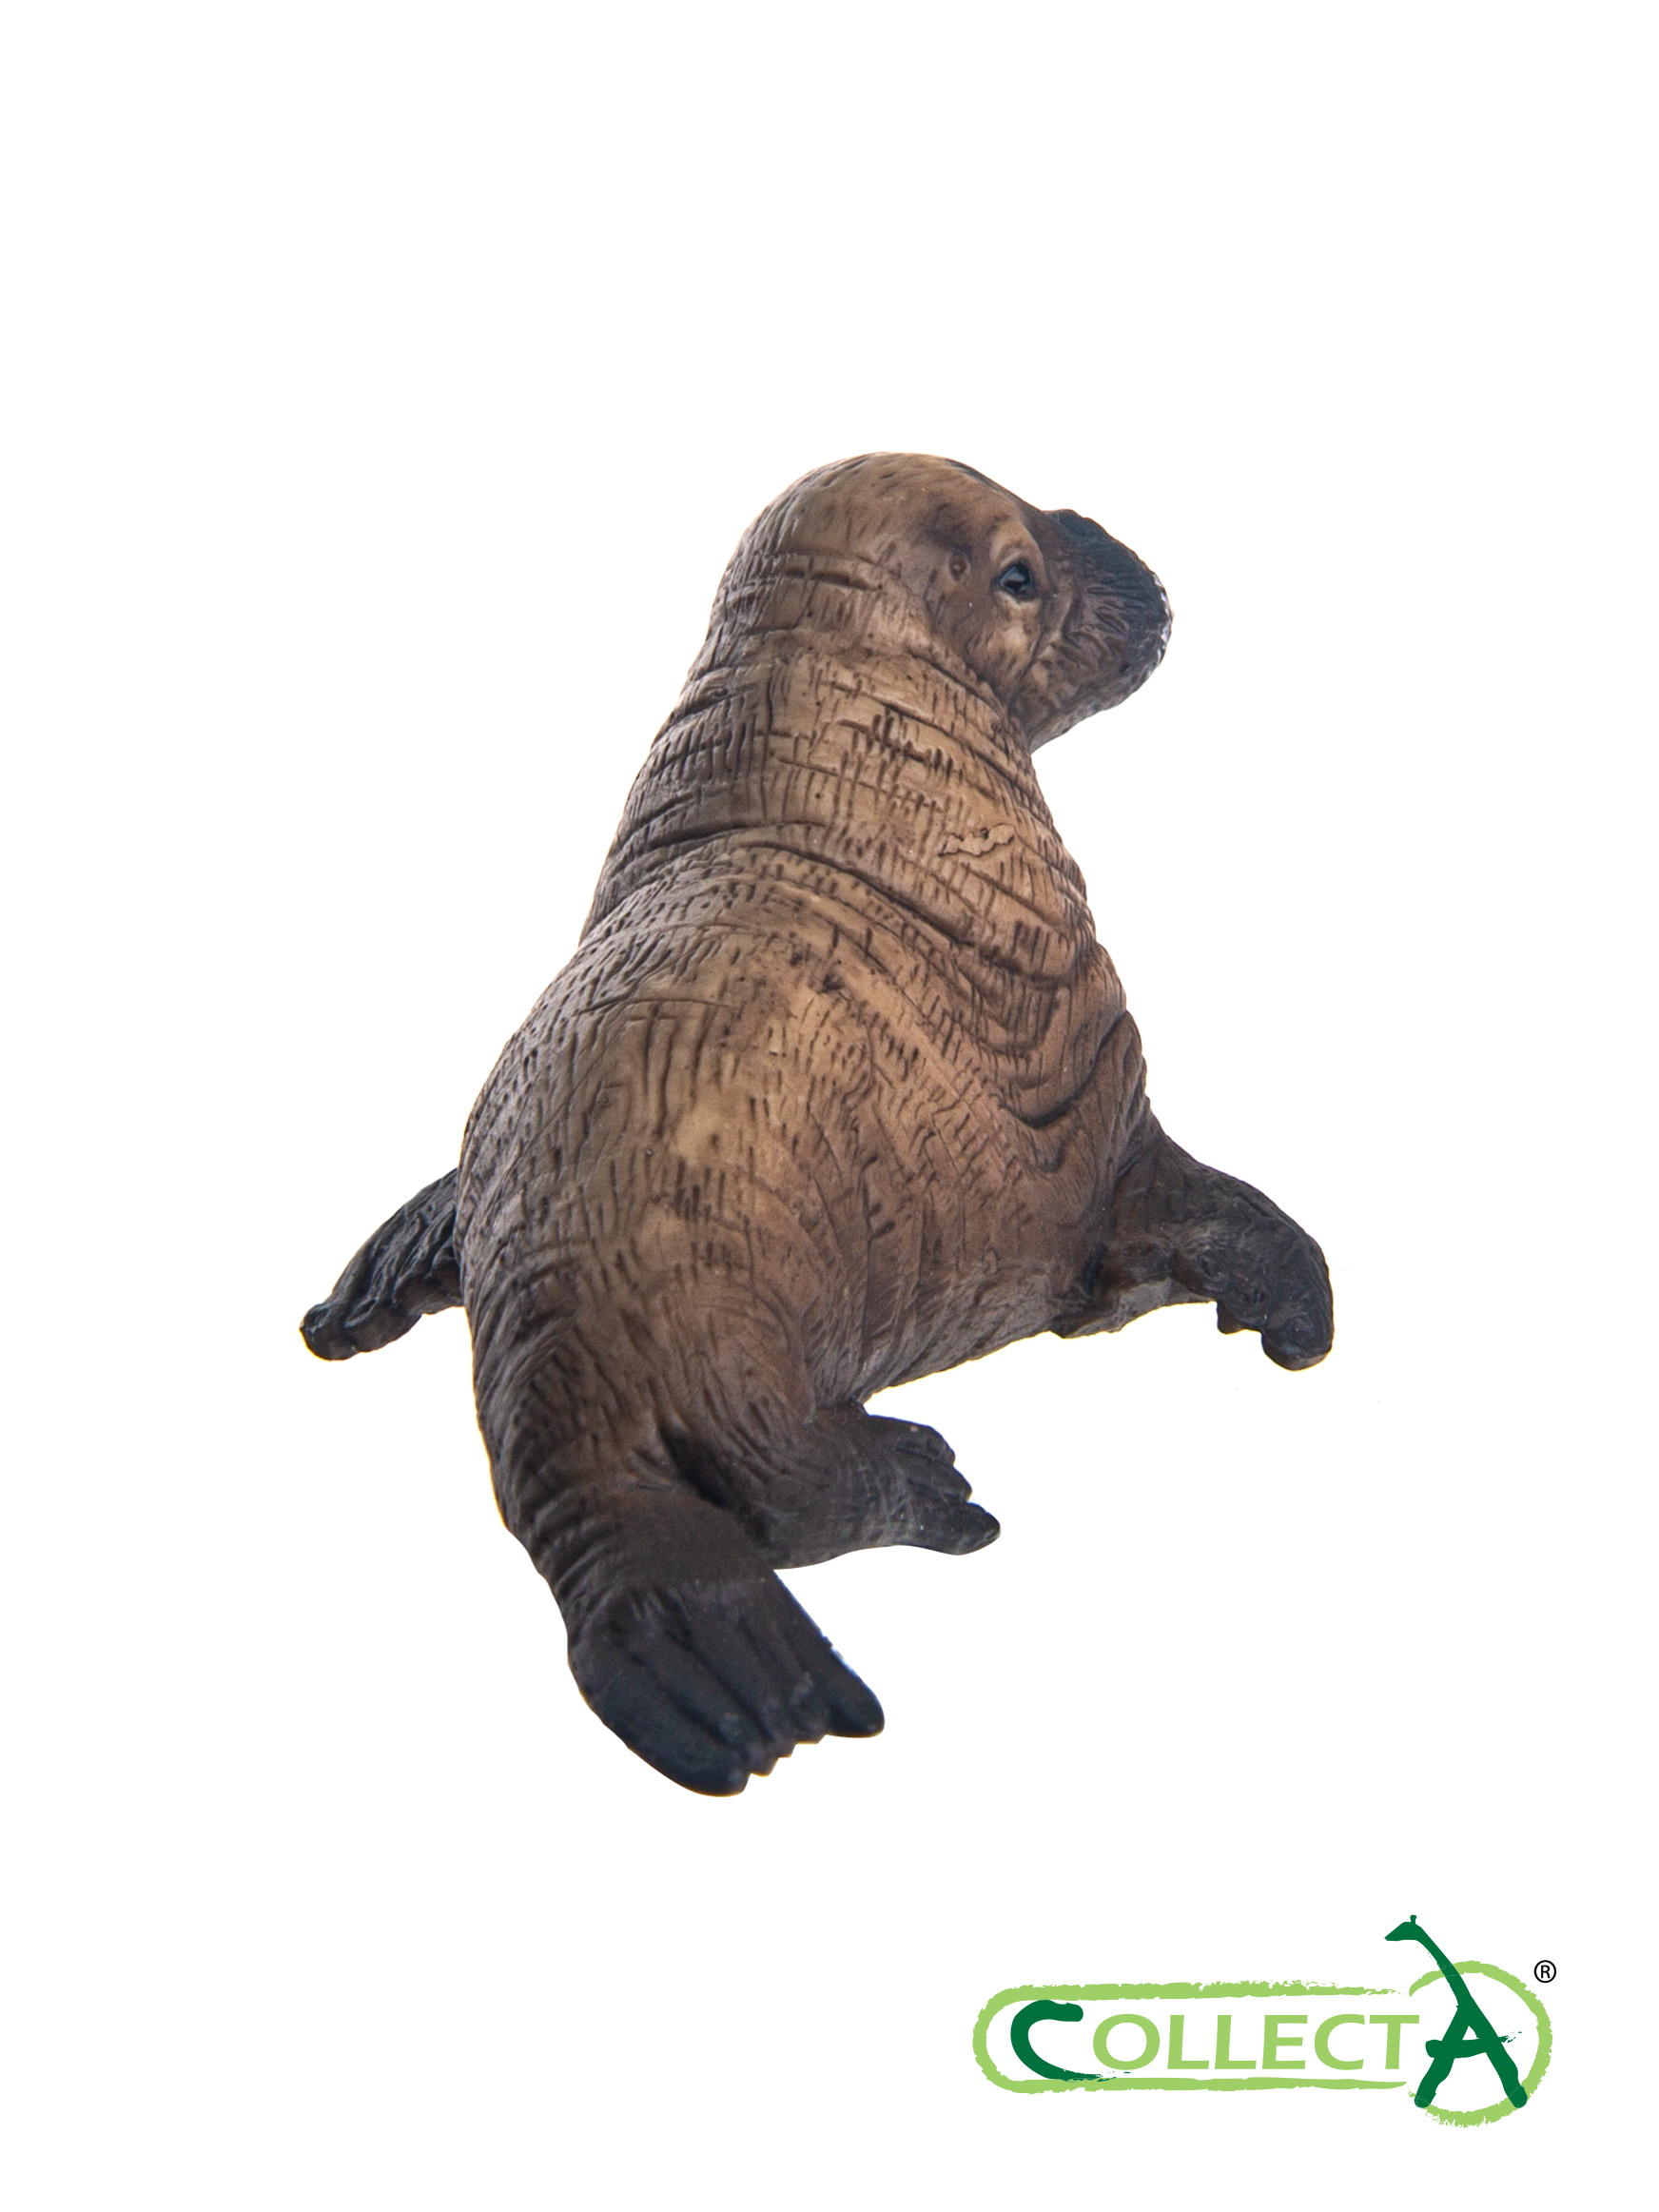 Игрушка Collecta Детёныш моржа фигурка морского животного - фото 4